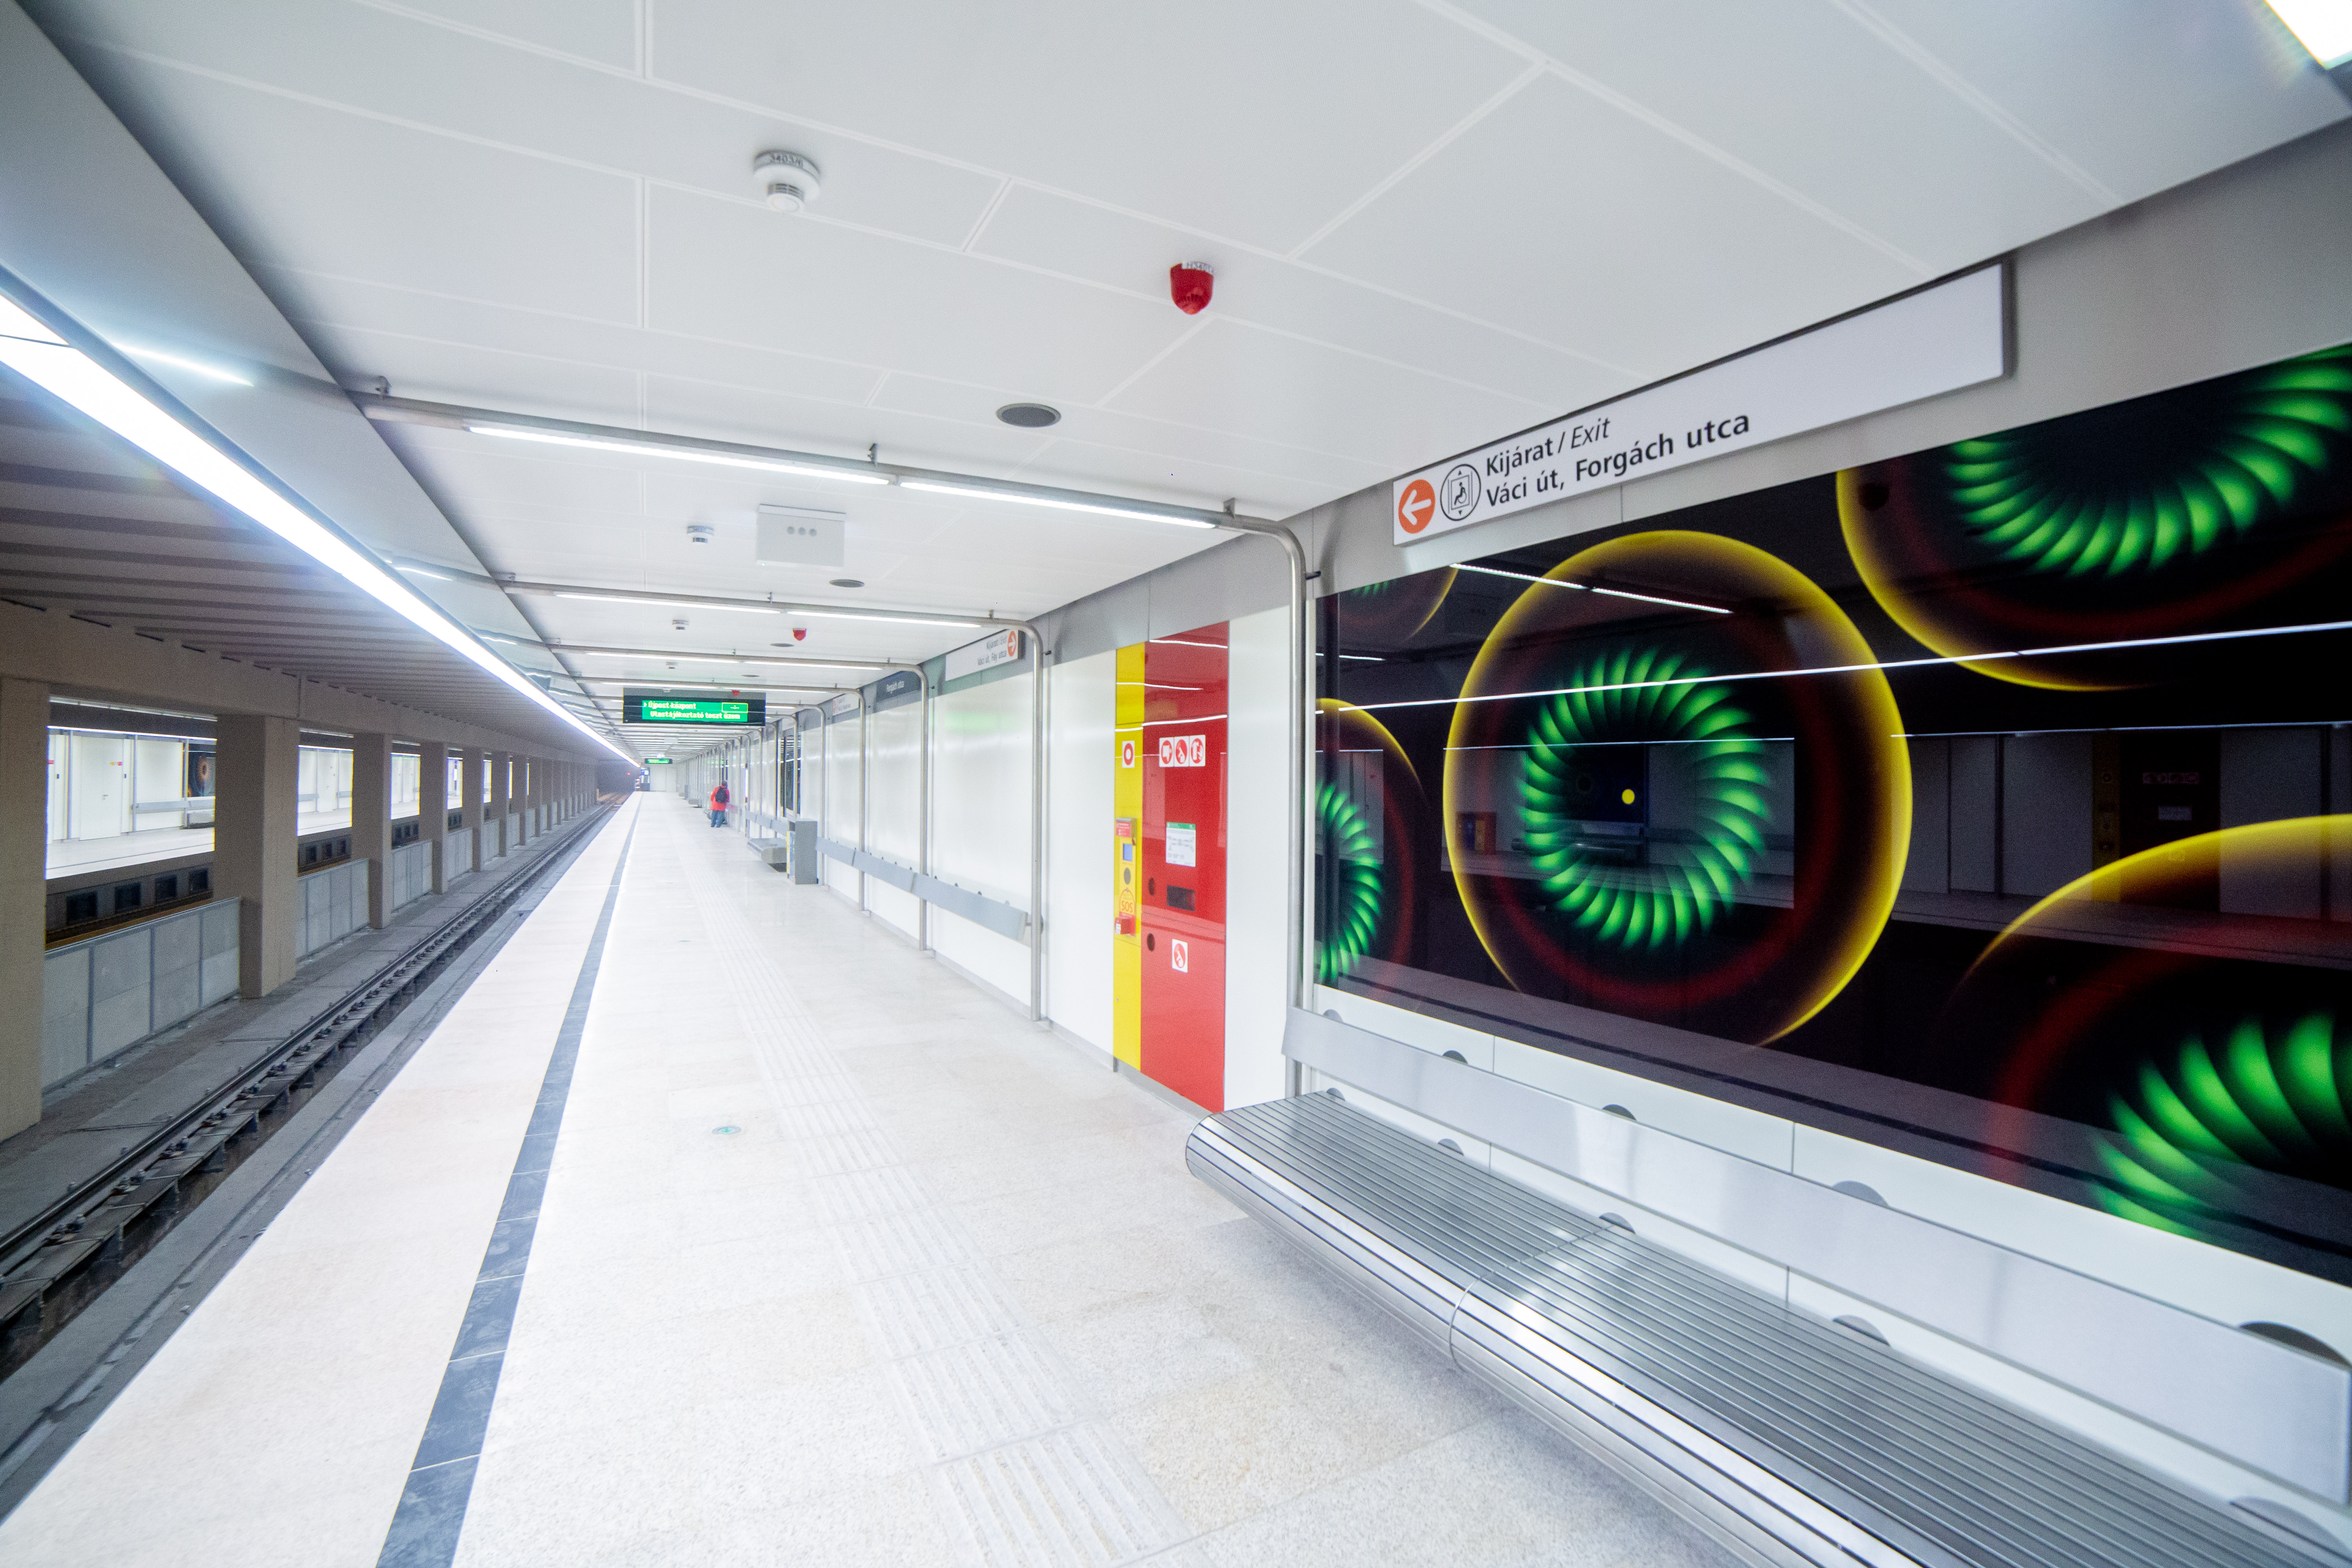 Újra jár a 3-as metró - fotógaléria a felújított állomásokról